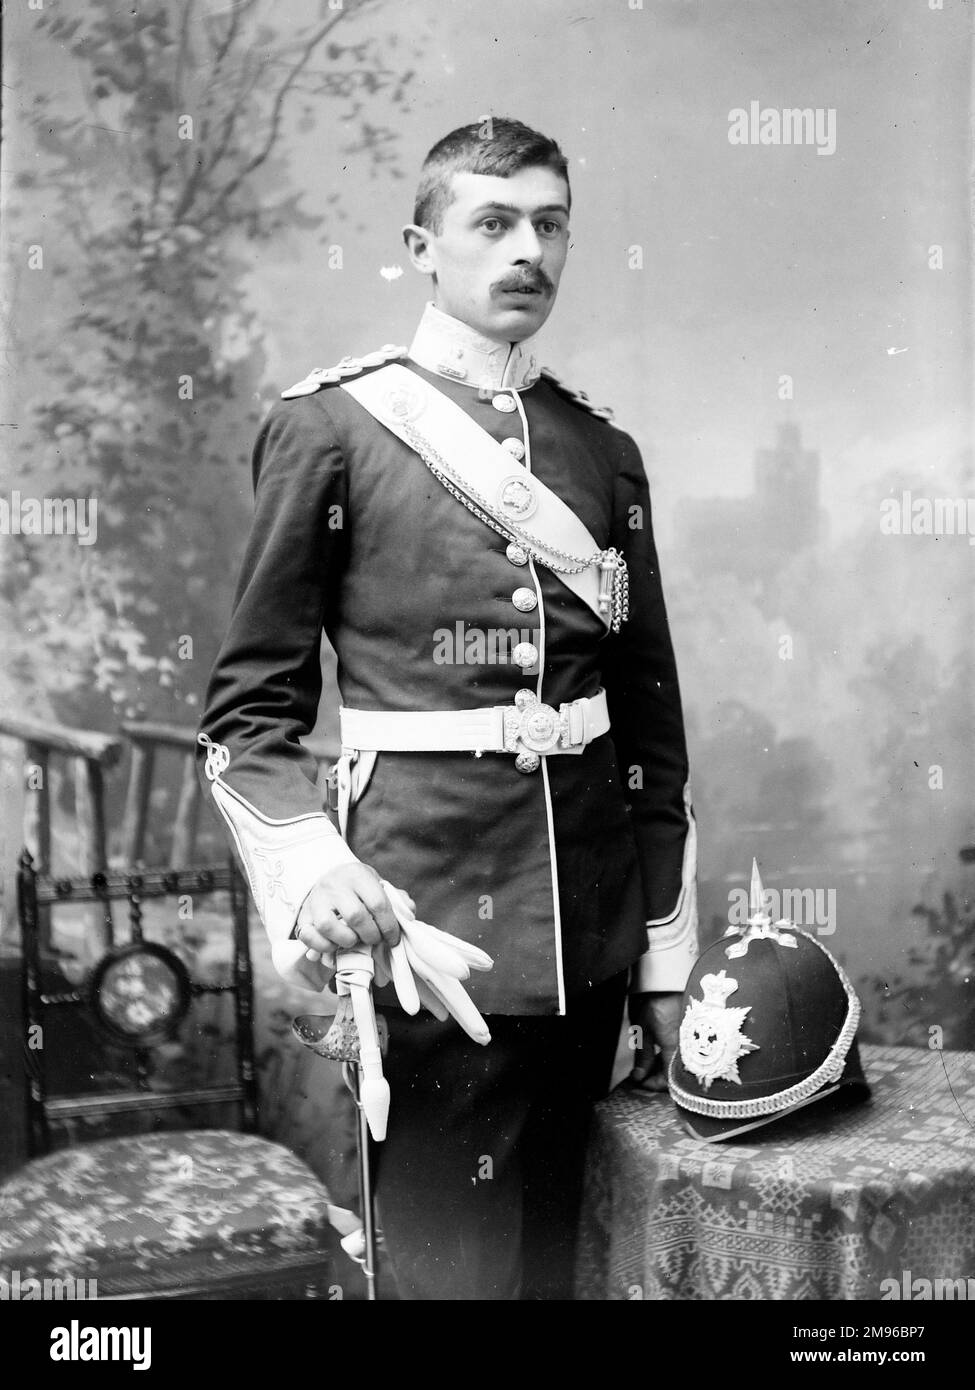 Ritratto di un giovane ufficiale dell'esercito appartenente al Battaglione del Brecknockshire. E' in uniforme, completa di spada, casco e guanti bianchi, nello studio del fotografo. Foto Stock